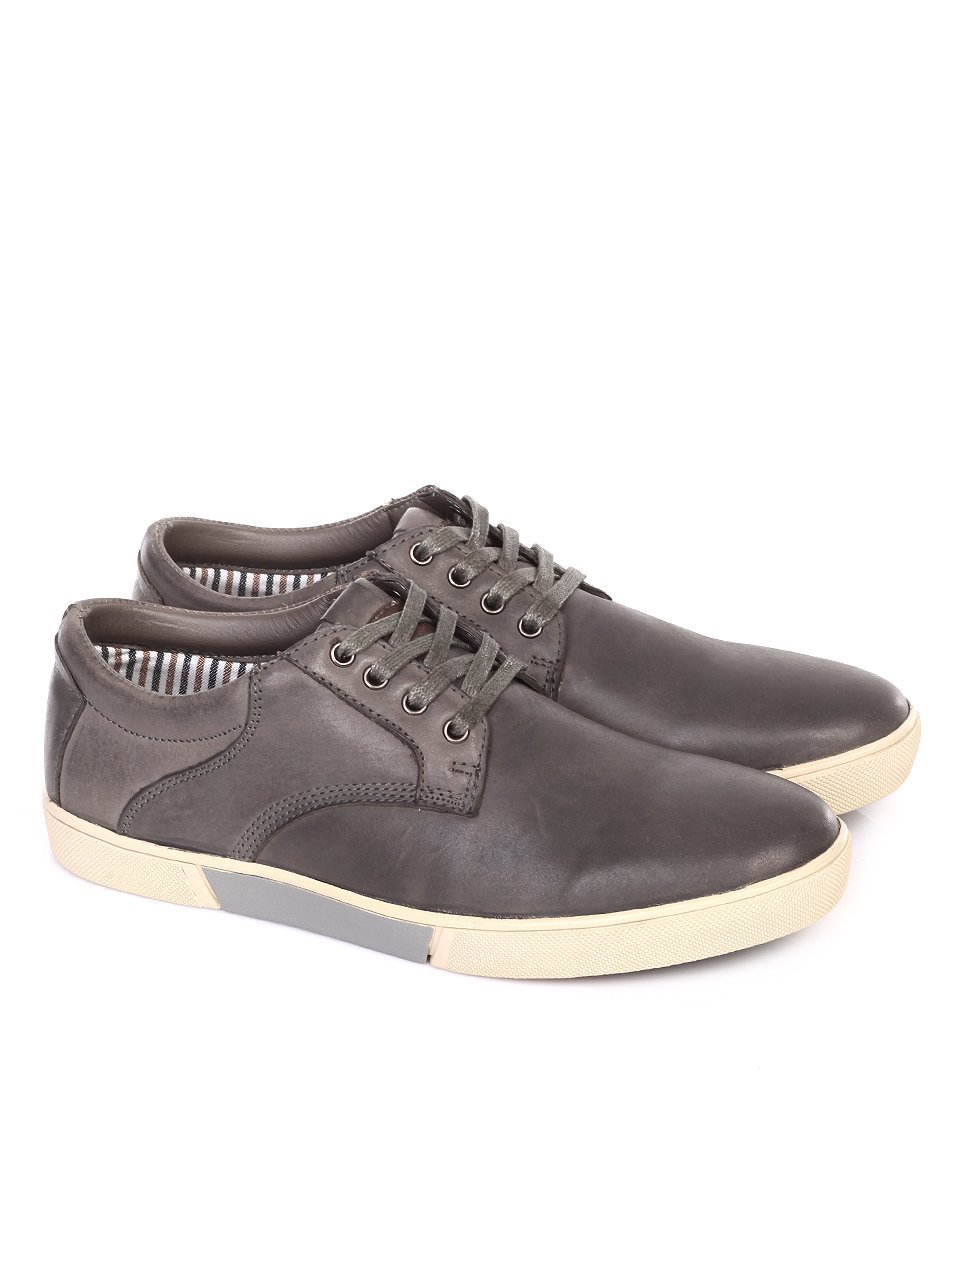 Ежедневни мъжки обувки от естествен набук в сиво 7N-18106 grey